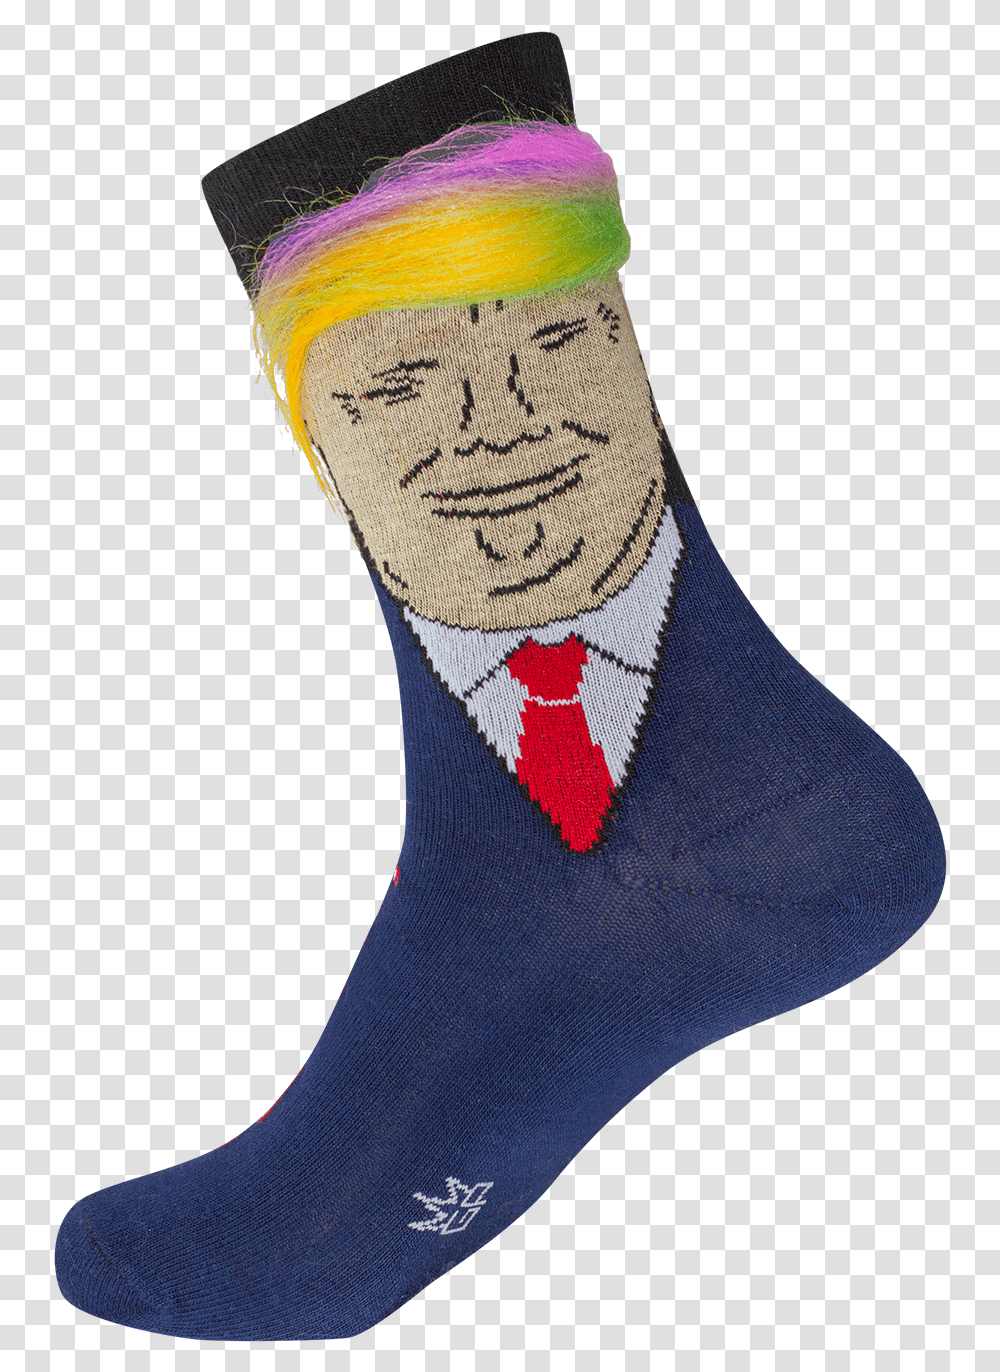 Trump Socks Hair, Apparel, Shoe, Footwear Transparent Png